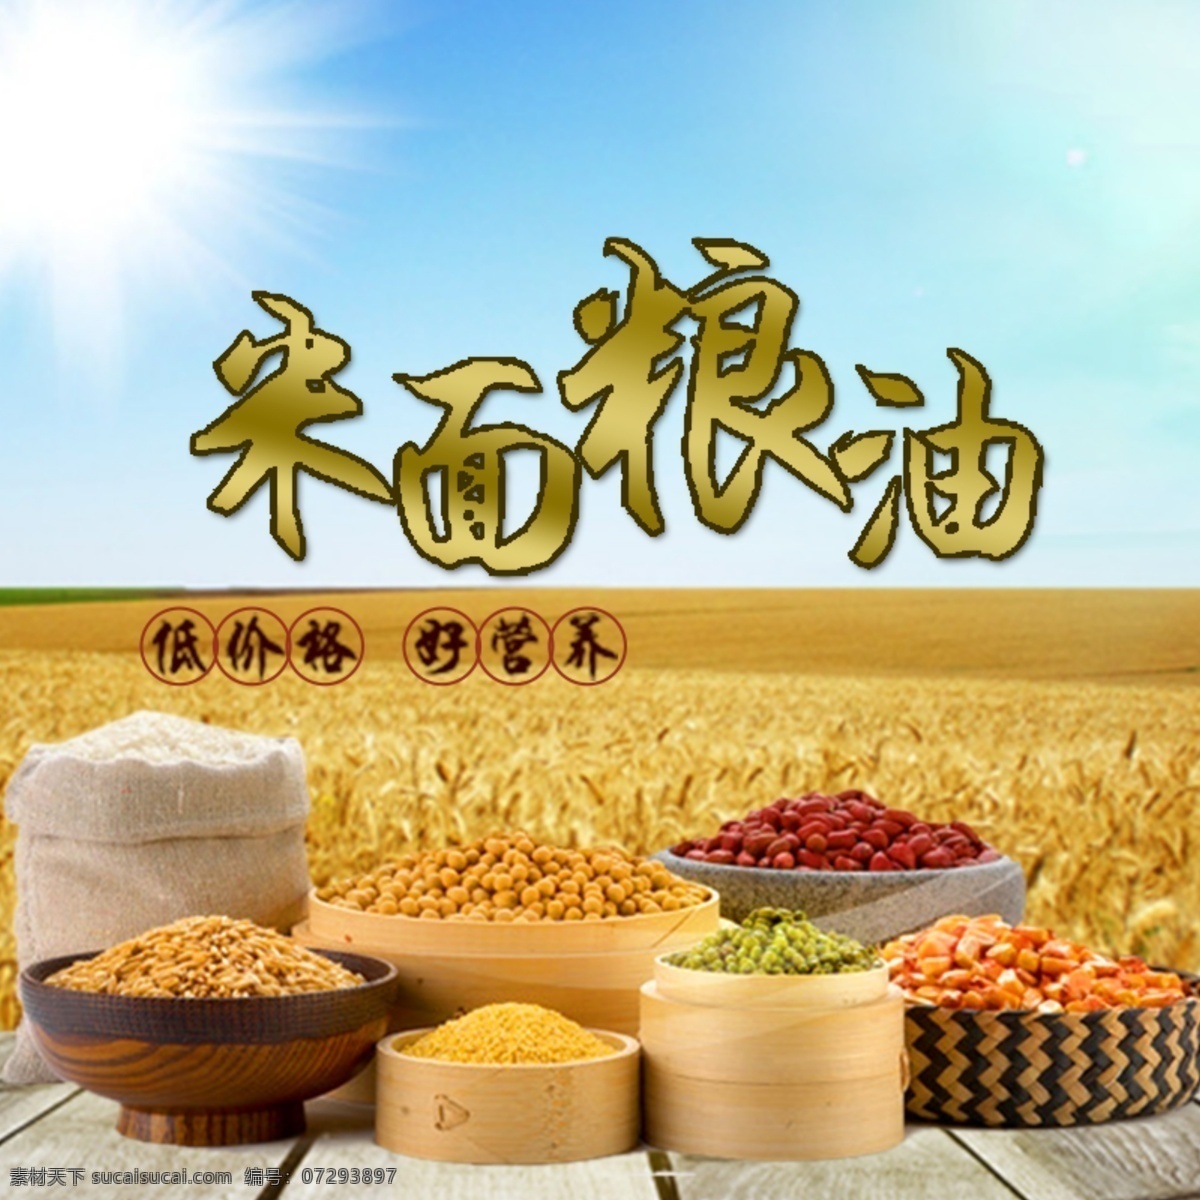 米面粮油图片 米 粮 油 米面粮油 矢量图